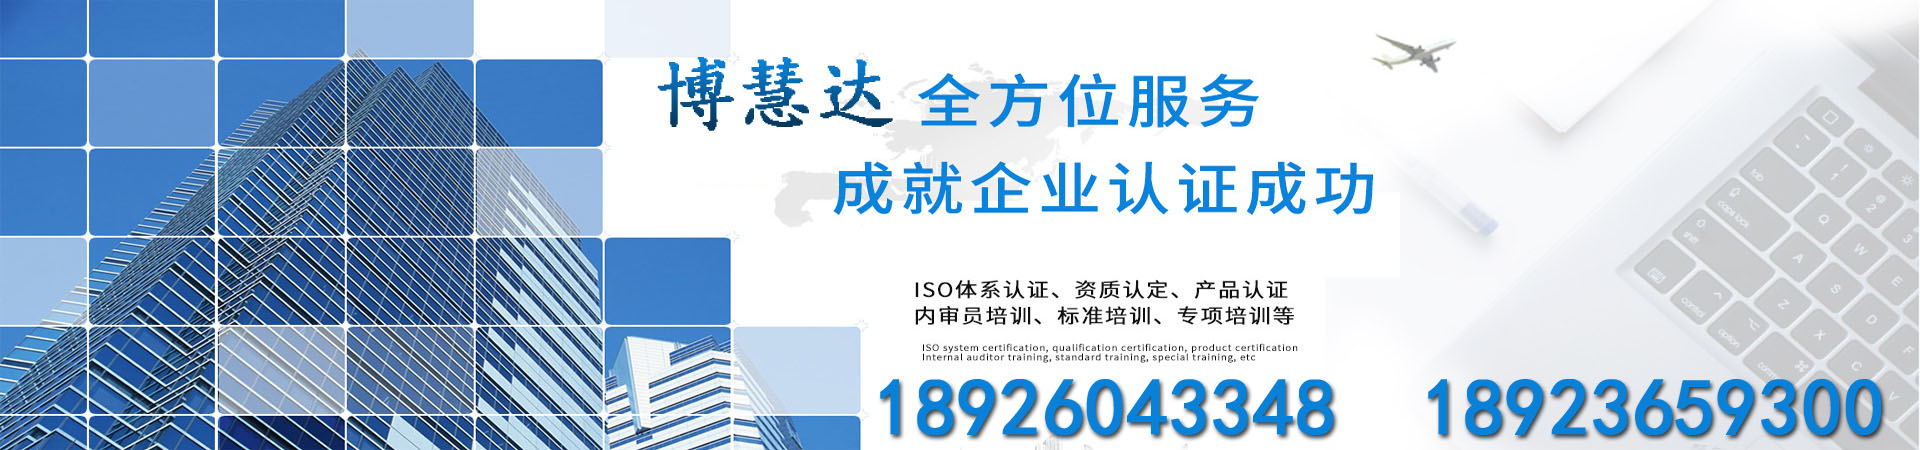 ISO13485认证、江苏本地ISO13485认证、江苏、江苏ISO13485认证